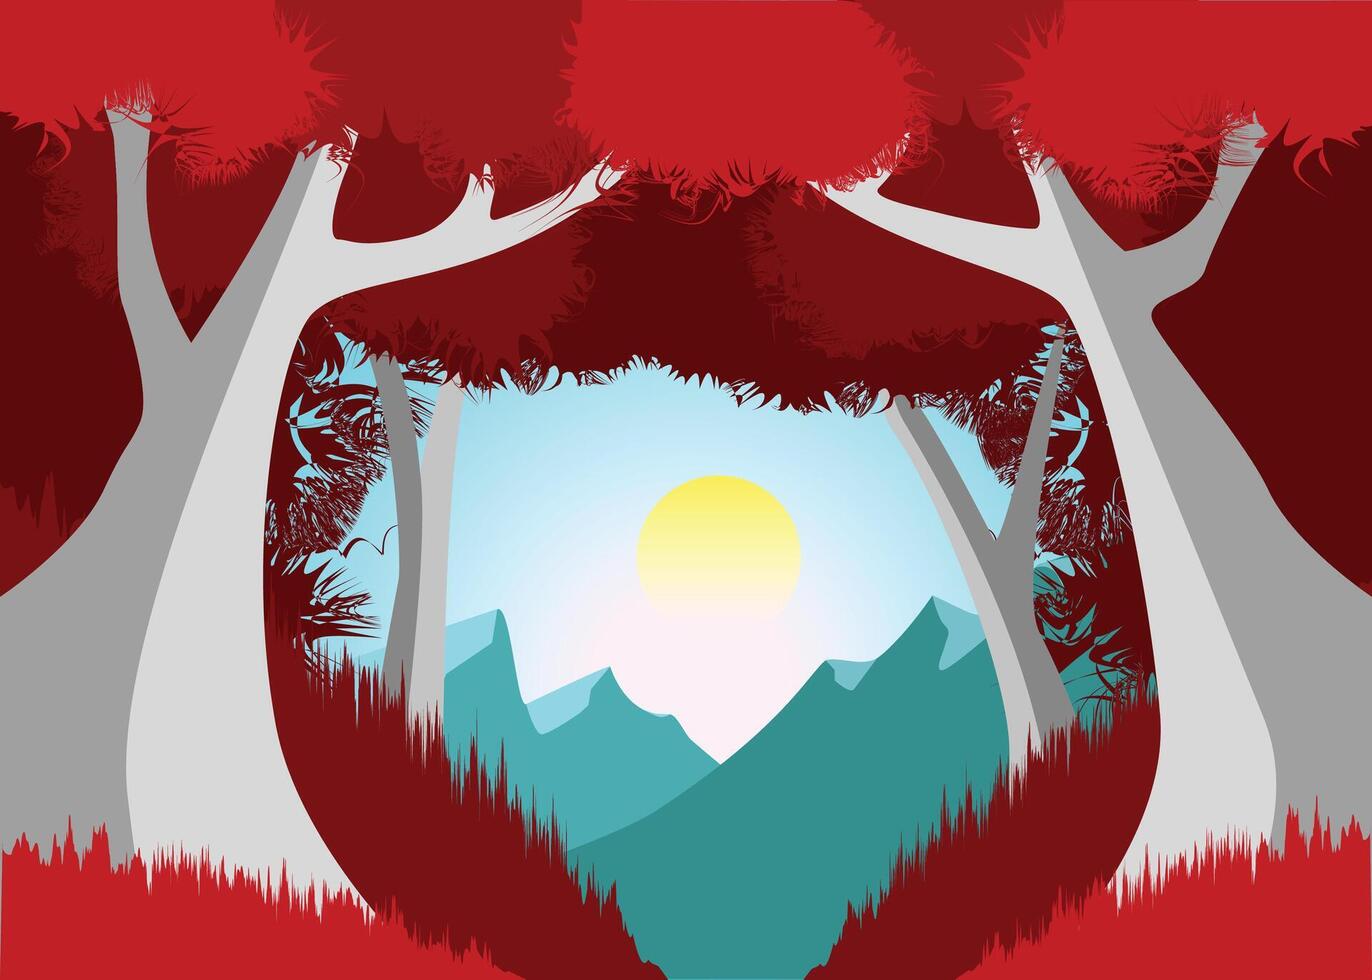 schön Karikatur Fantasie Landschaft mit Sonnenuntergang oder Sonnenaufgang im ein magisch rot Baum Wald vektor